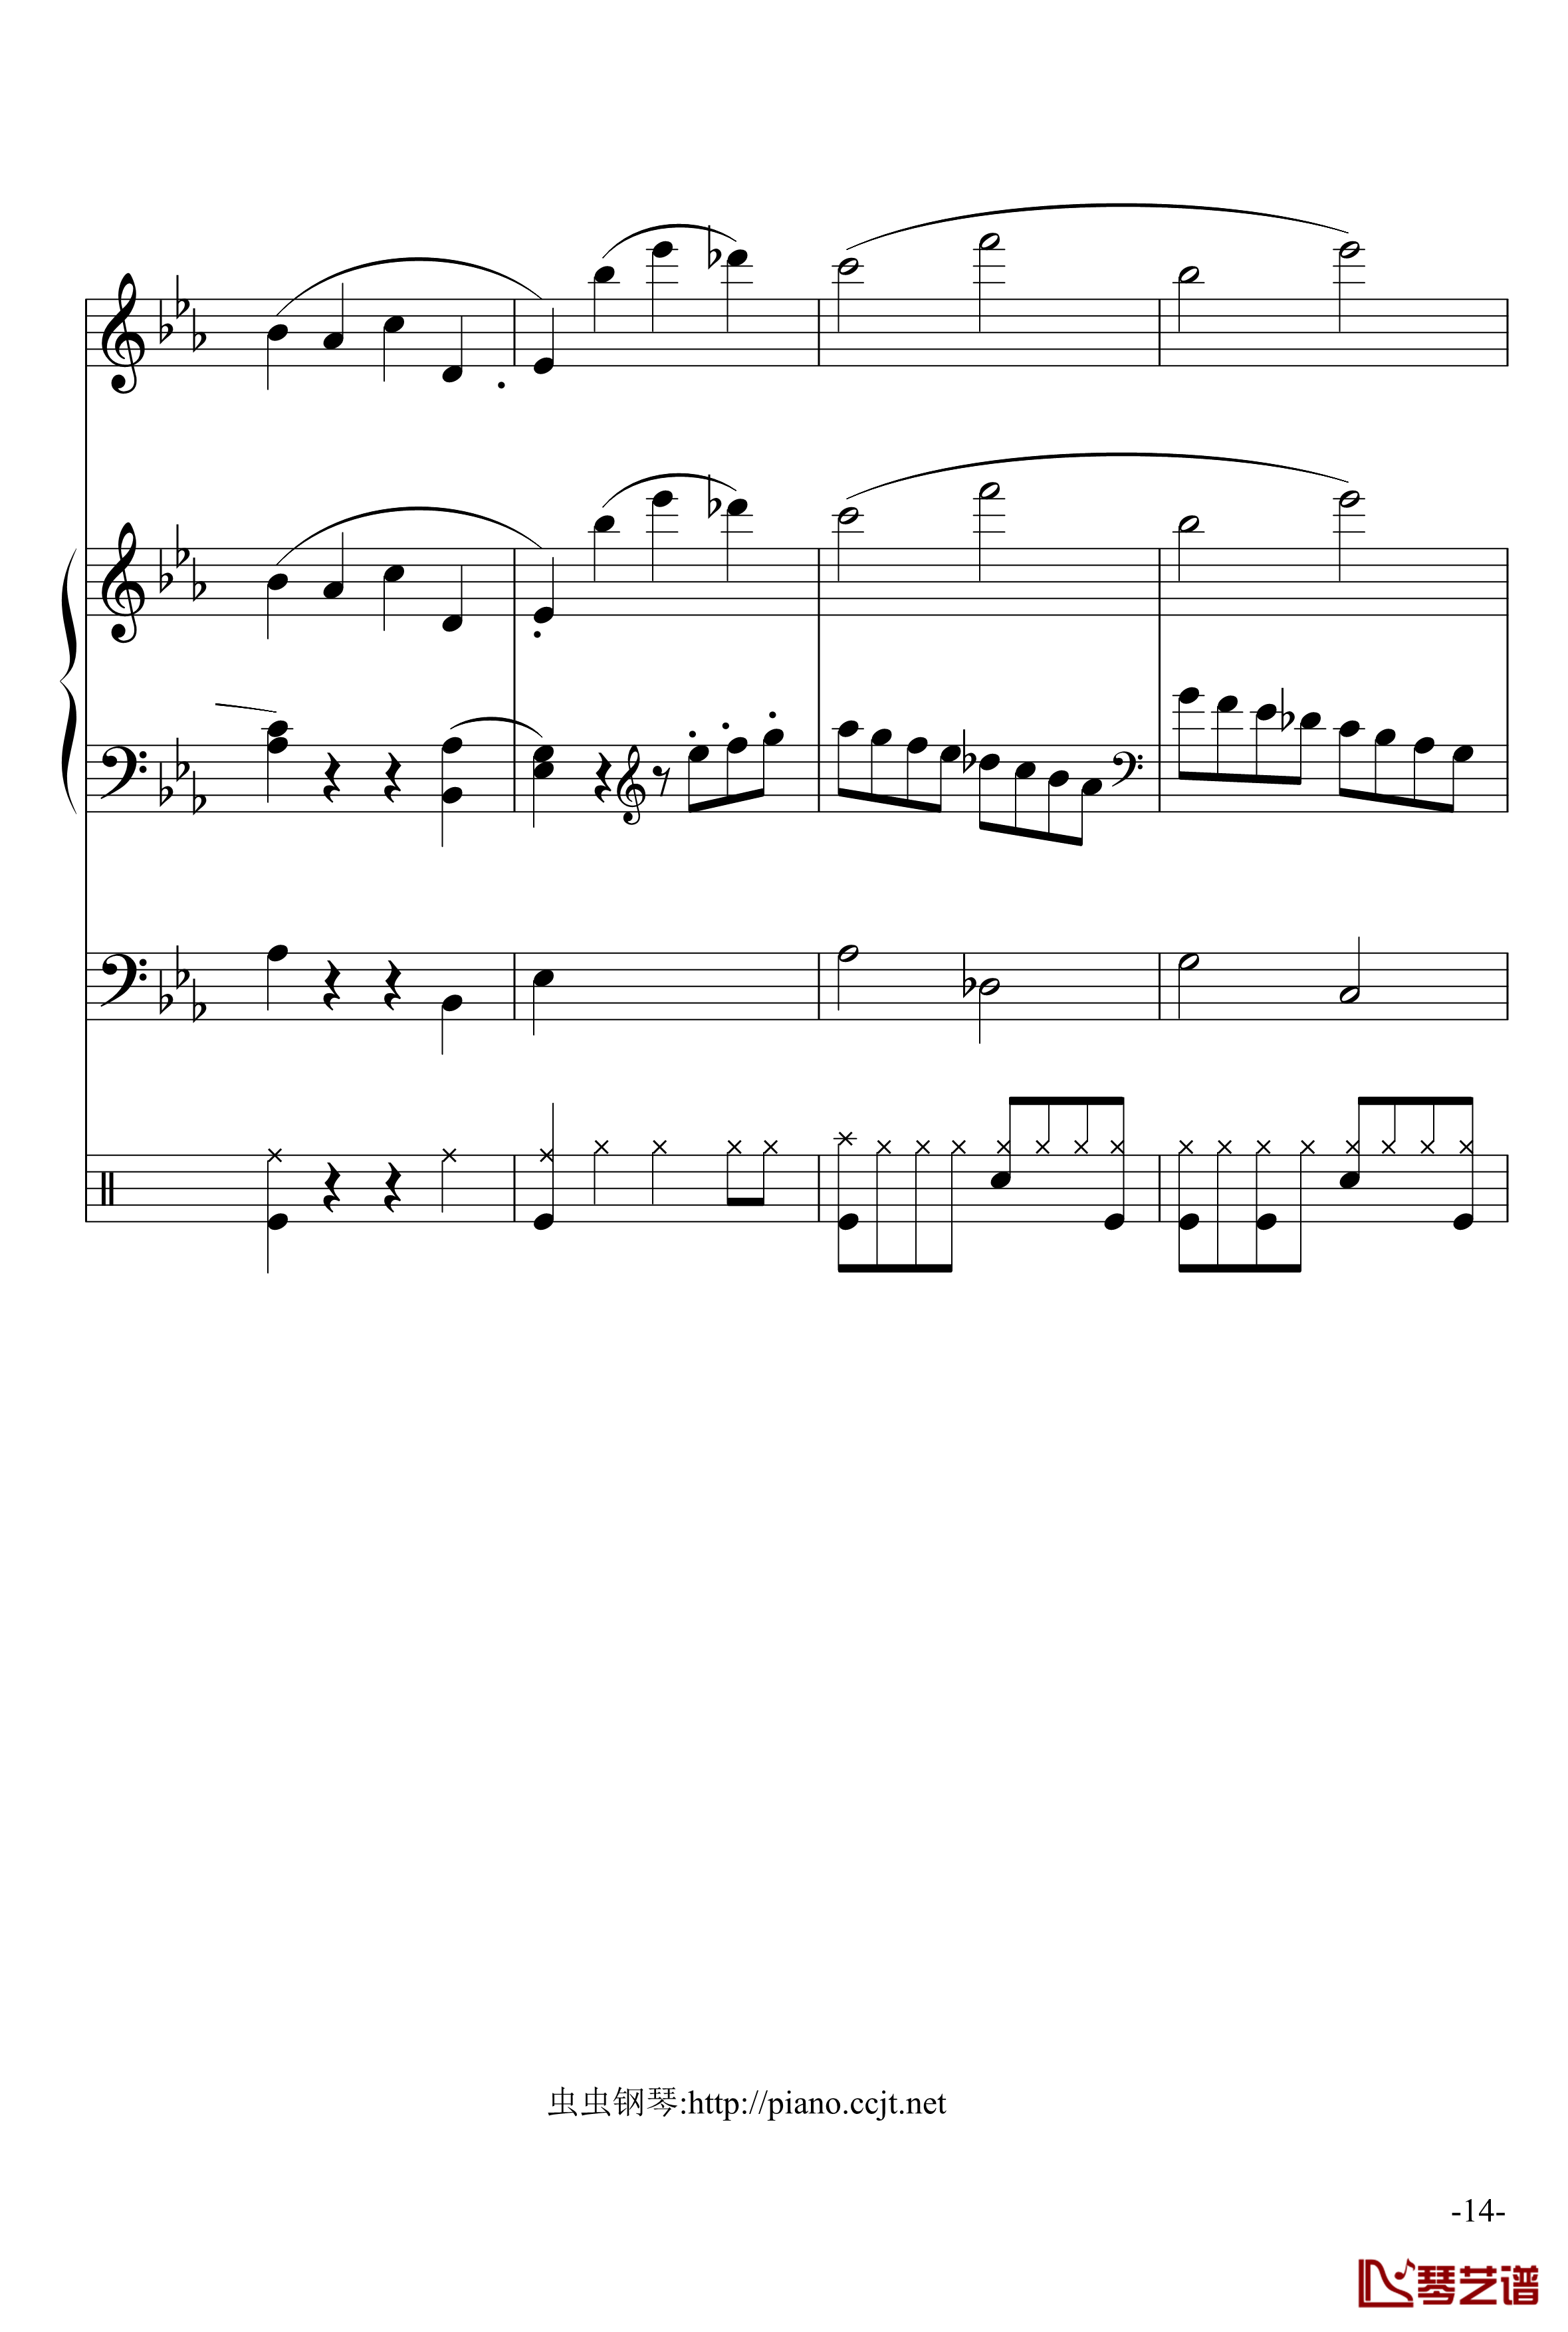 悲怆奏鸣曲钢琴谱-加小乐队-贝多芬-beethoven14